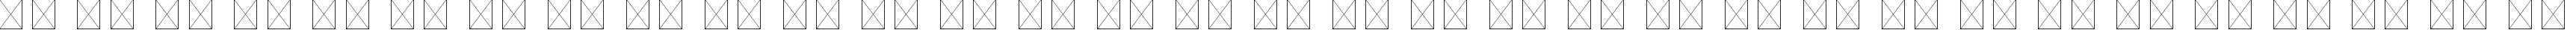 Пример написания русского алфавита шрифтом Eviolite B Regular